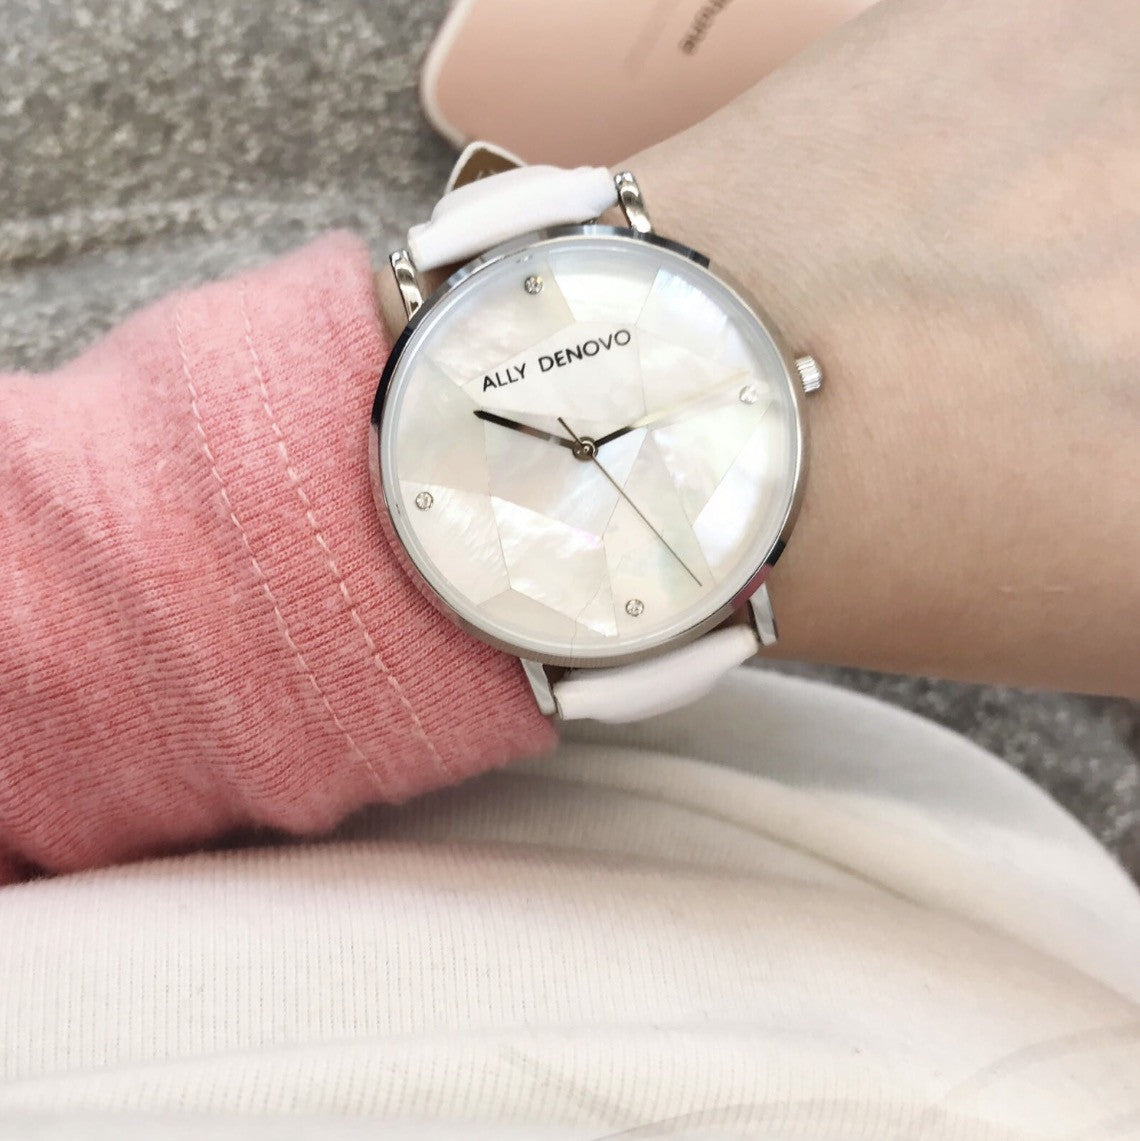 Gaia pearl皮革腕錶-白色菱形琉璃白框白色真皮錶帶 AF5003.6